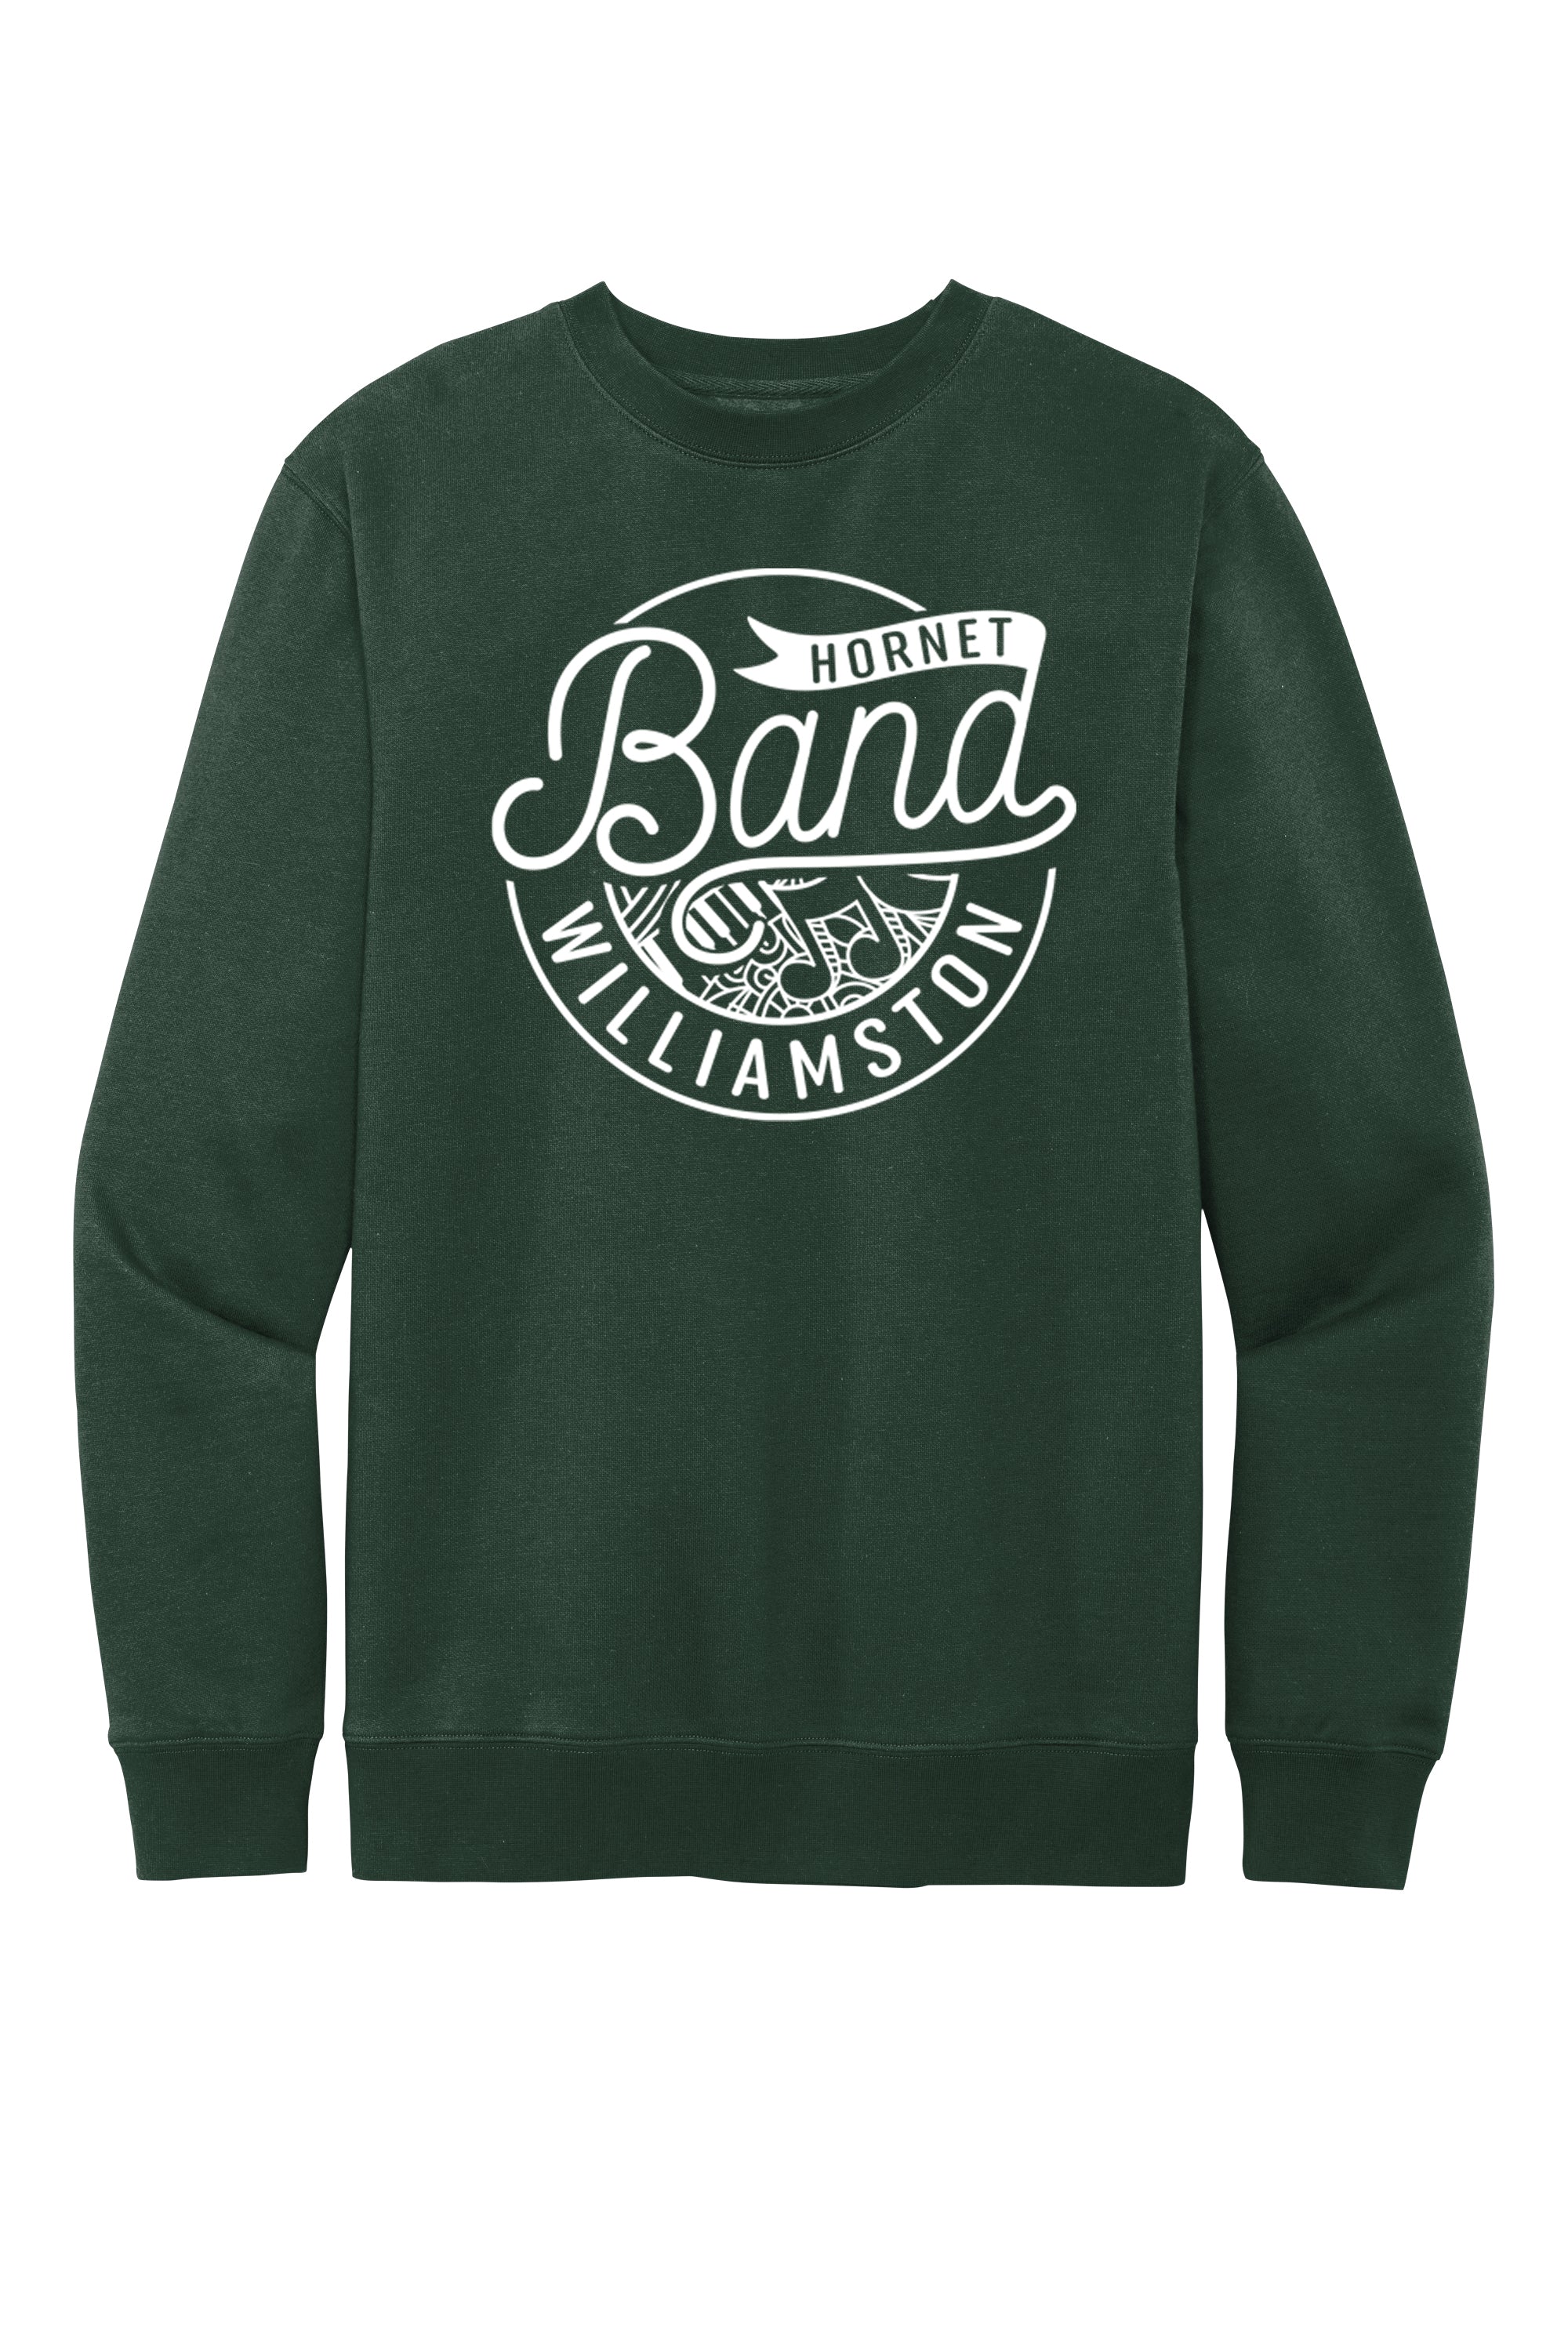 Williamston Band - Sweatshirt